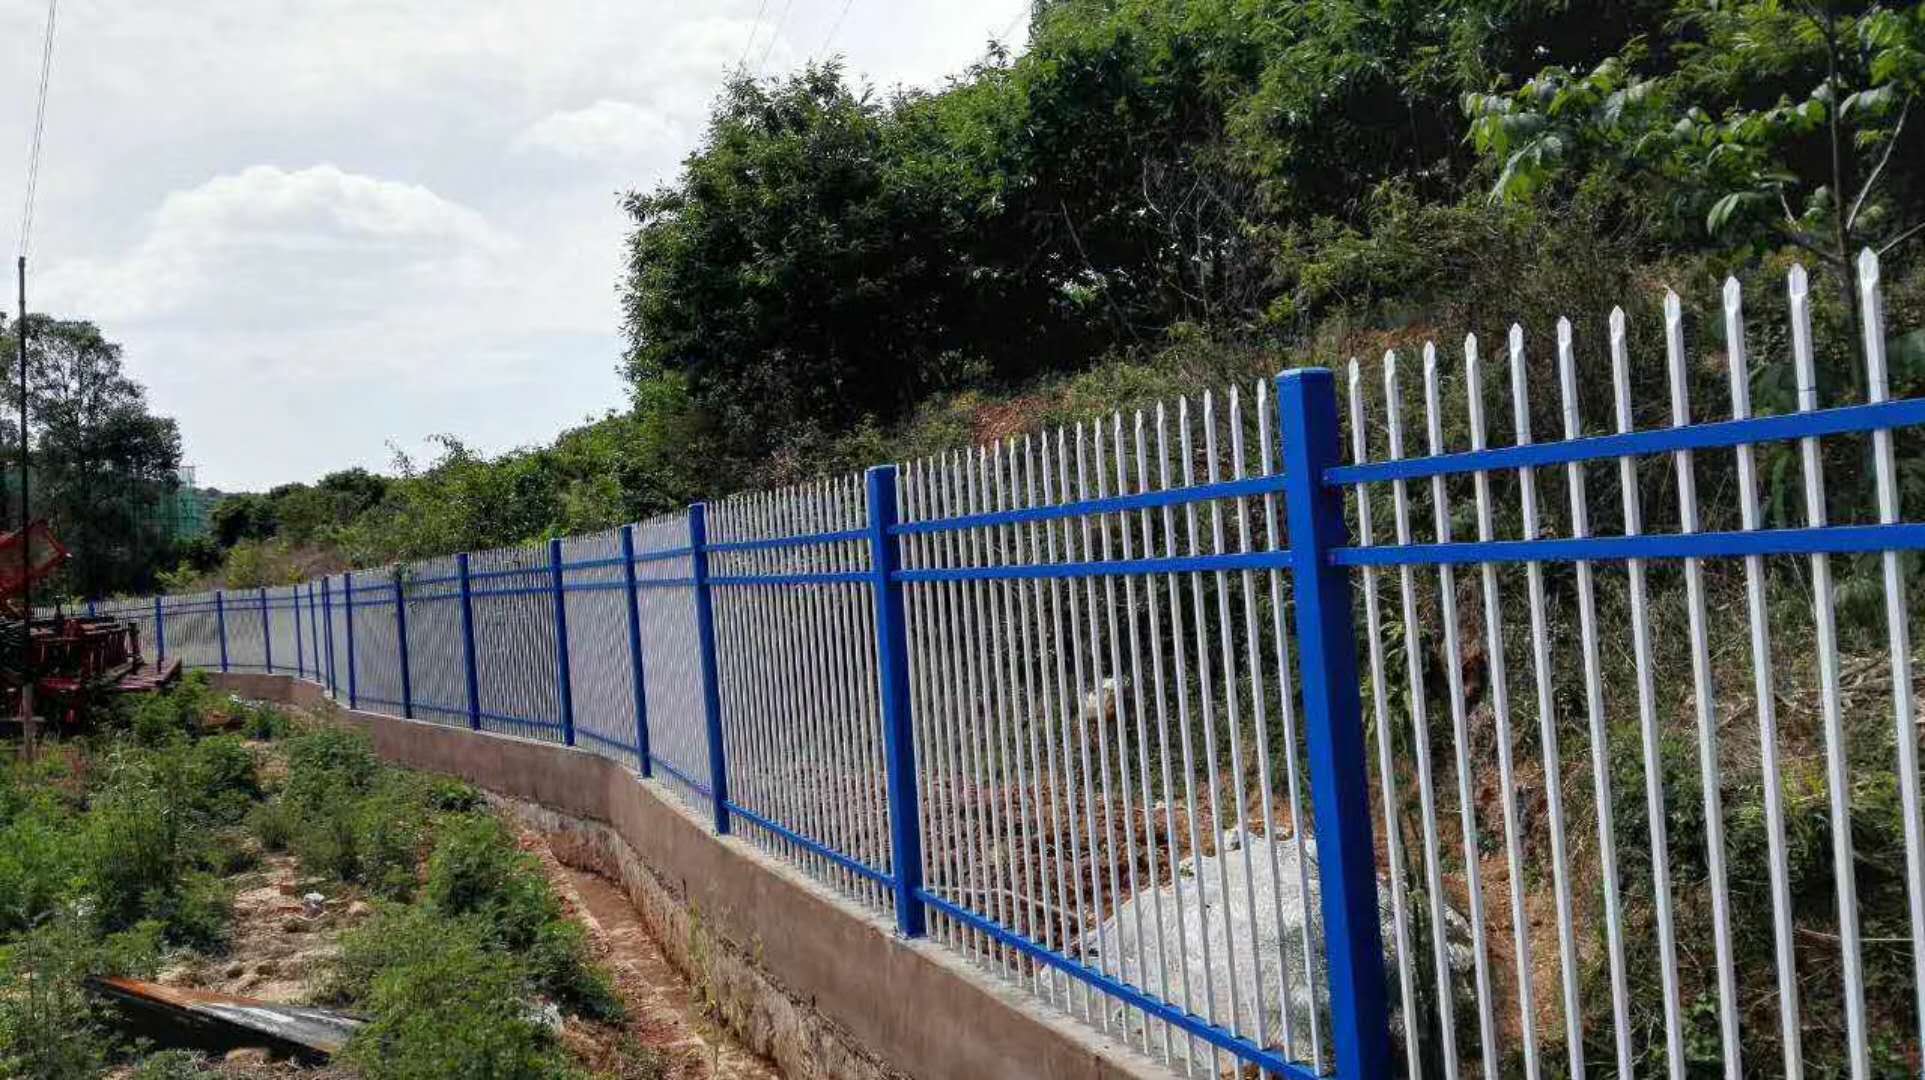 钢丝网围墙多少钱一米 浸塑钢丝网围栏价格 围墙护栏网报价-阿里巴巴